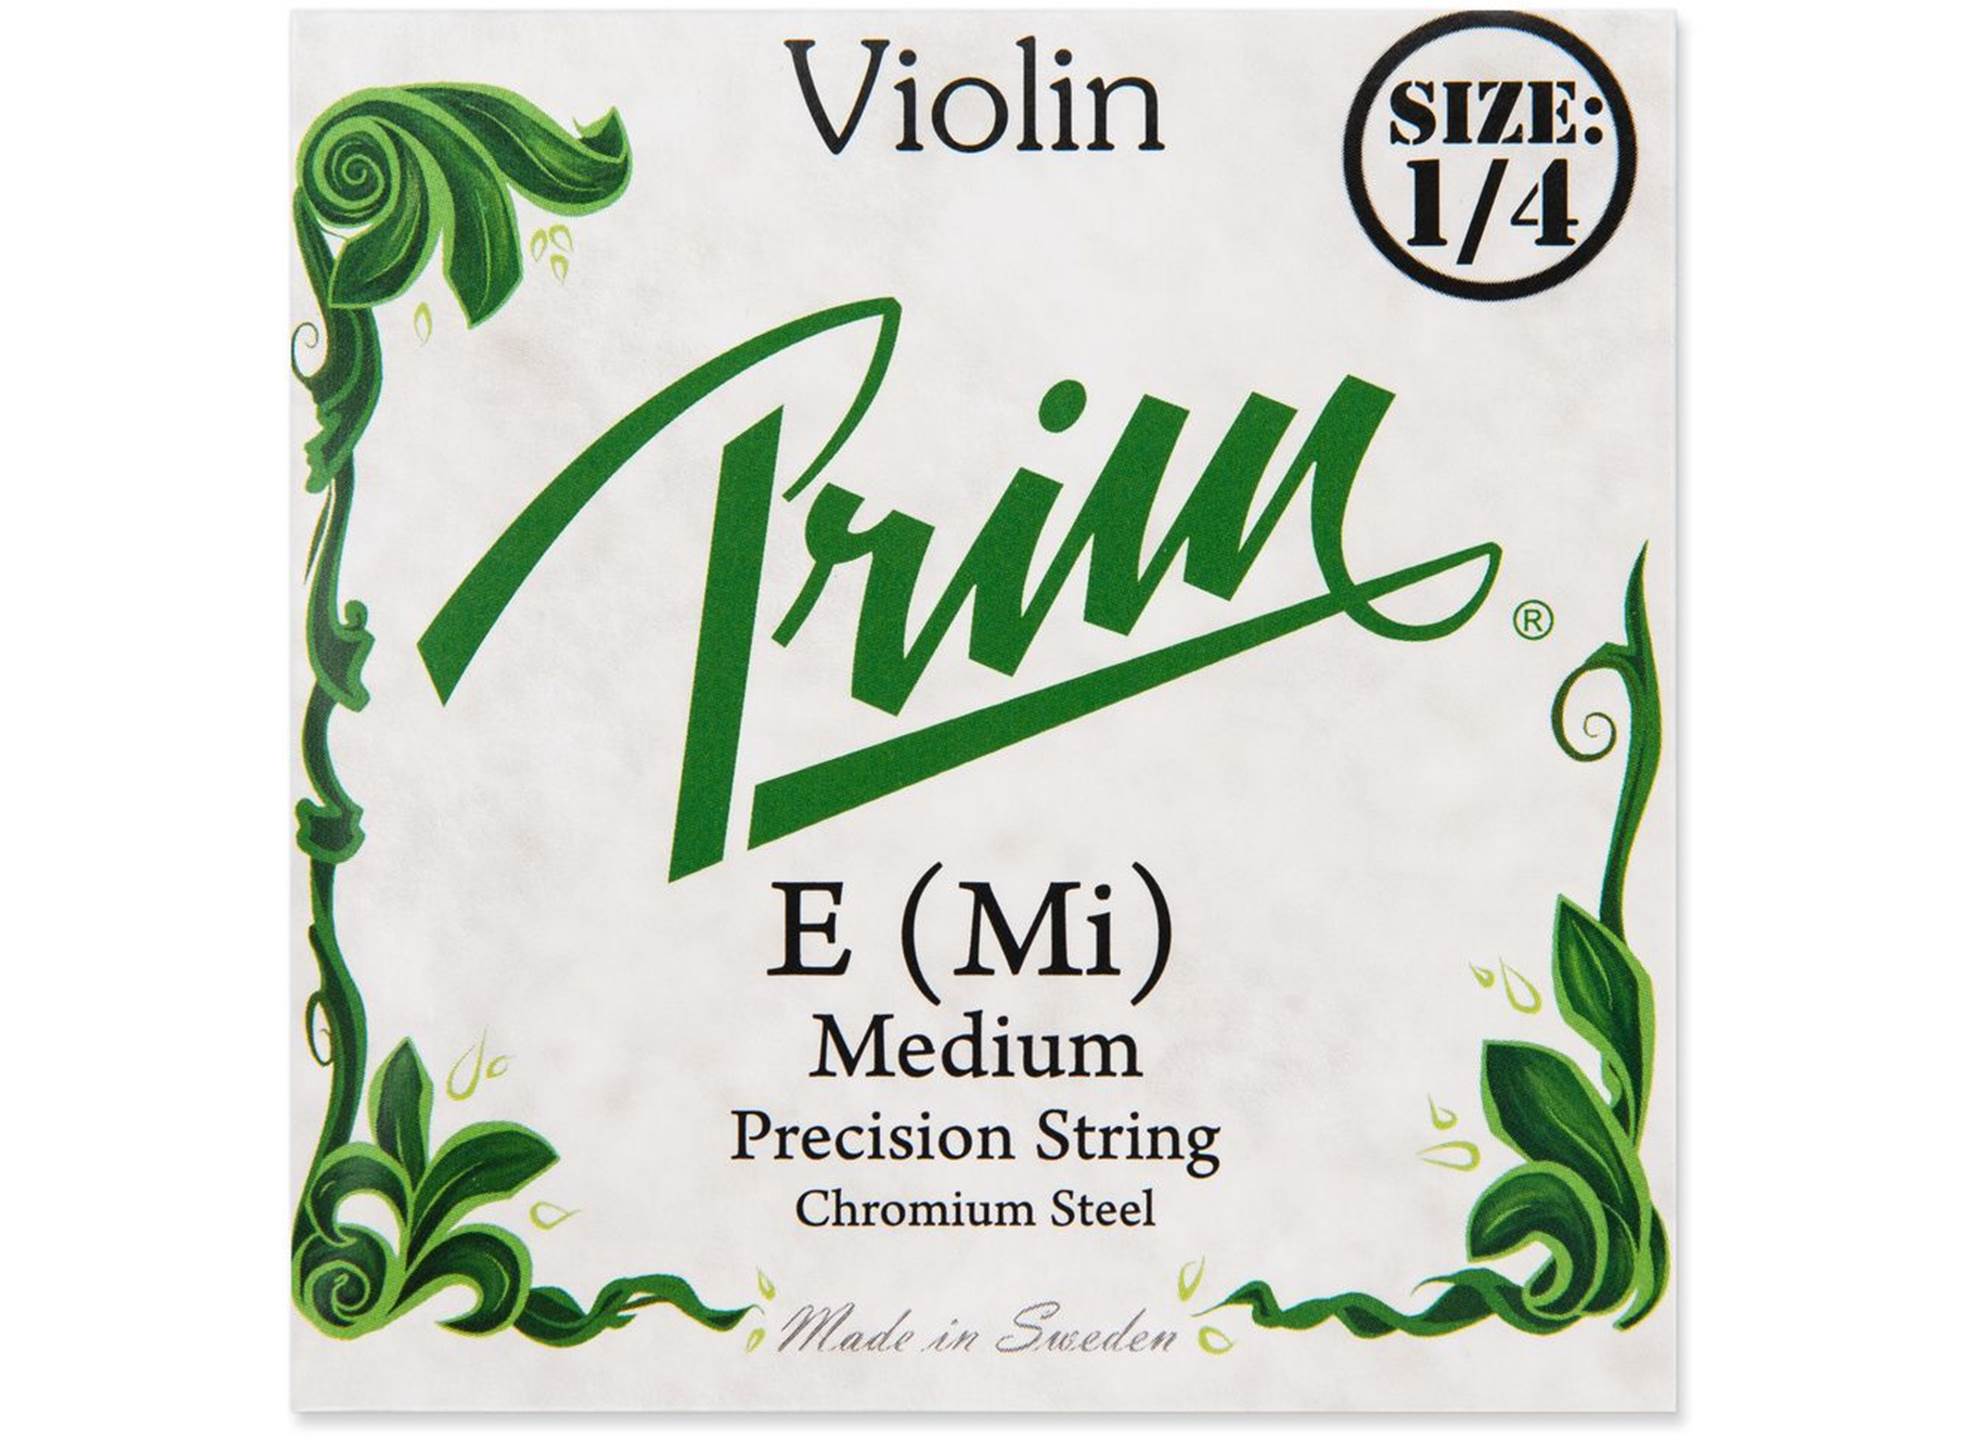 Violin 1/4 E